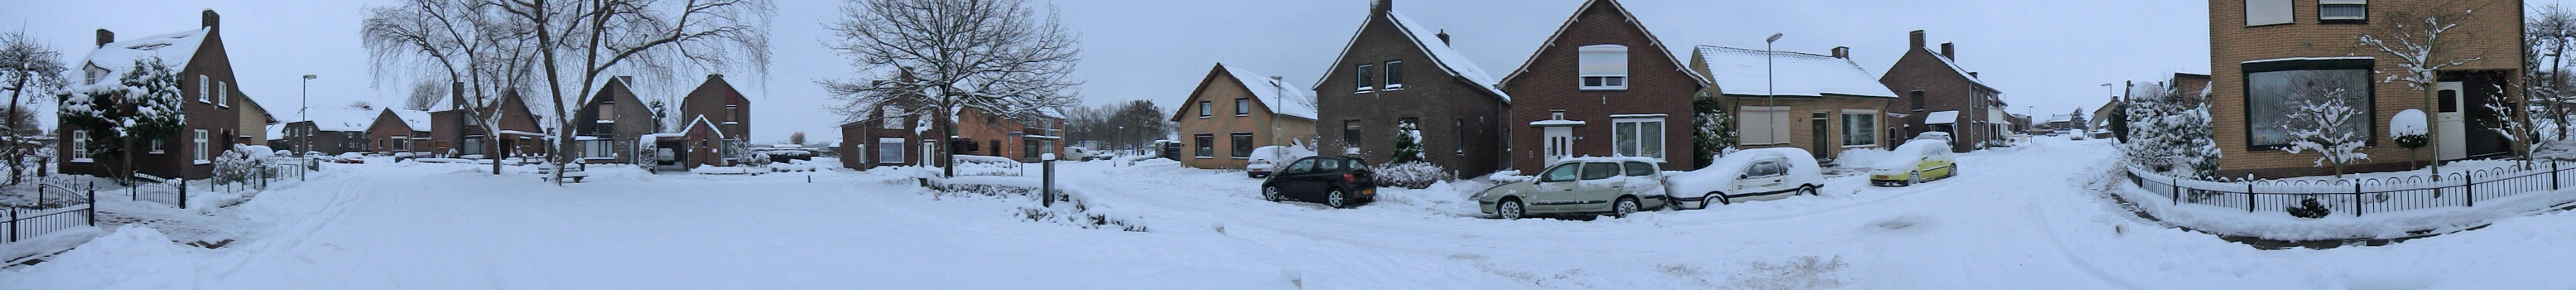 Sneeuw in Dieteren op 24 december 2010